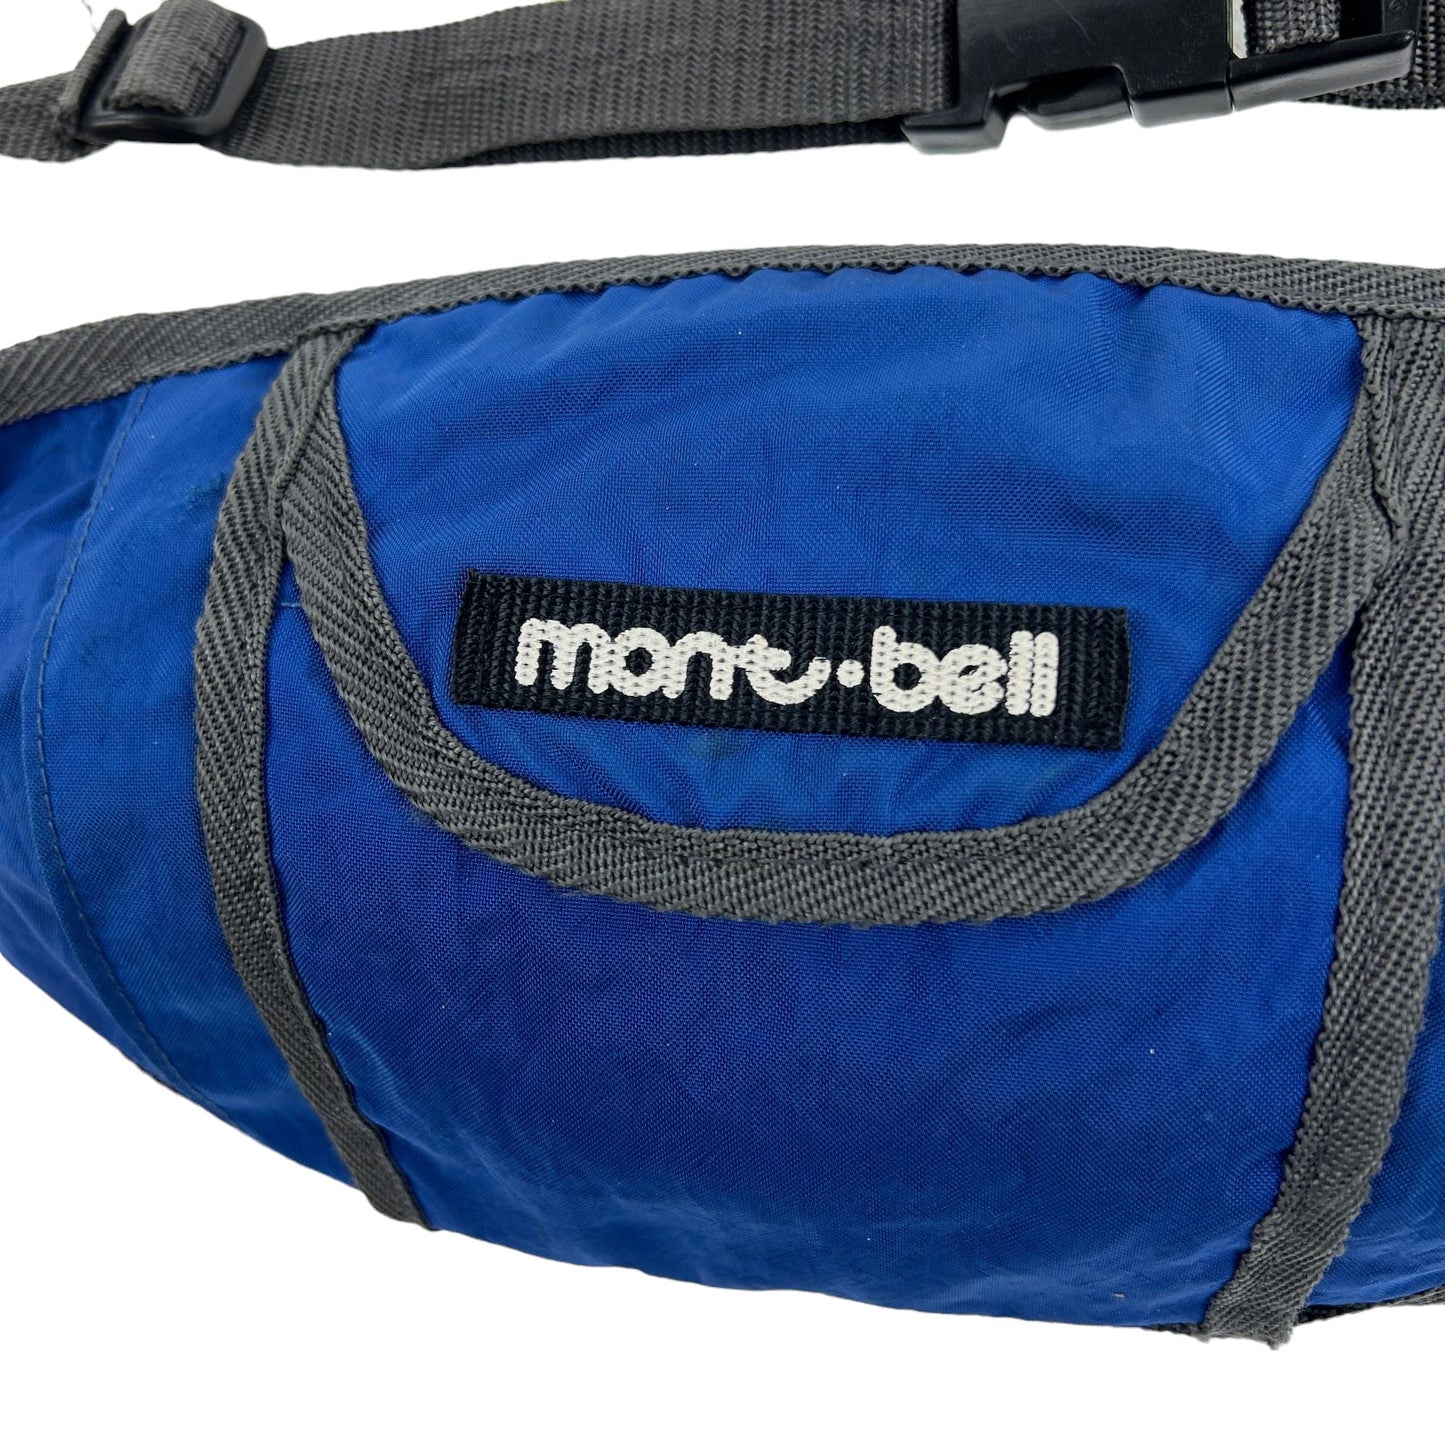 Vintage Montbell Waist Bag